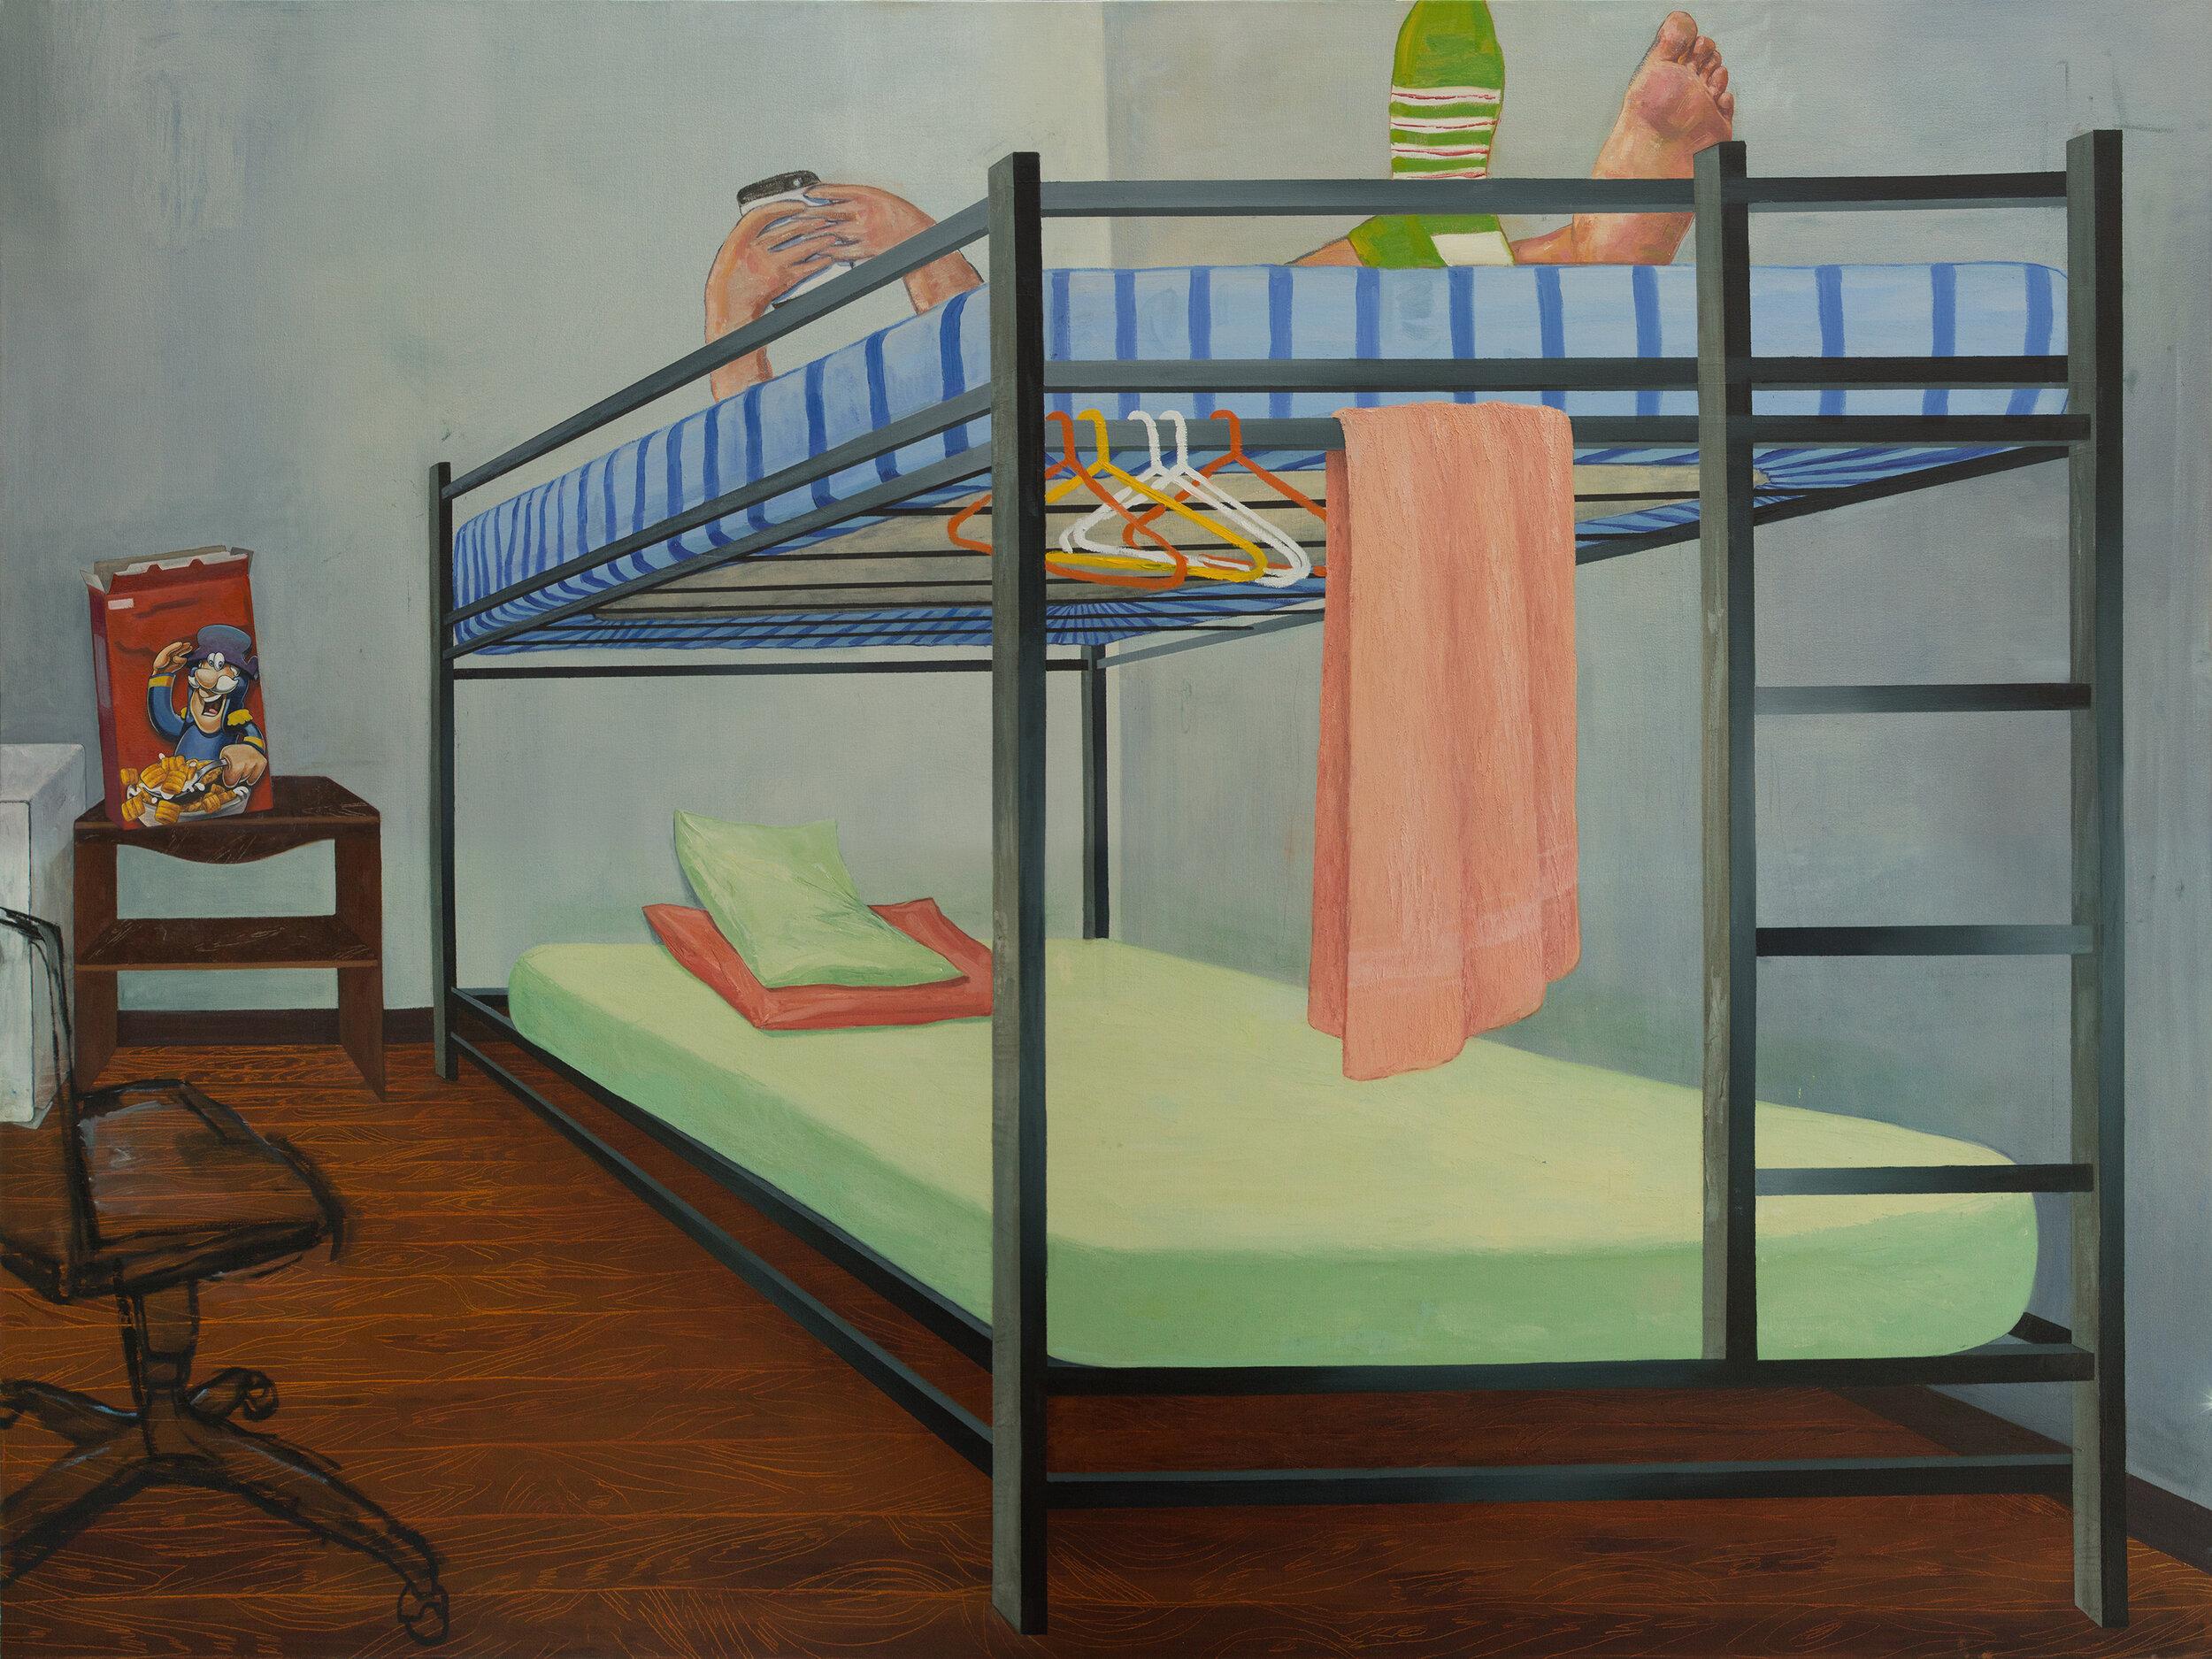 Esteban Ocampo-Giraldo Figurative Painting - Moncho En El Camarote (Moncho In The Bunk Bed)